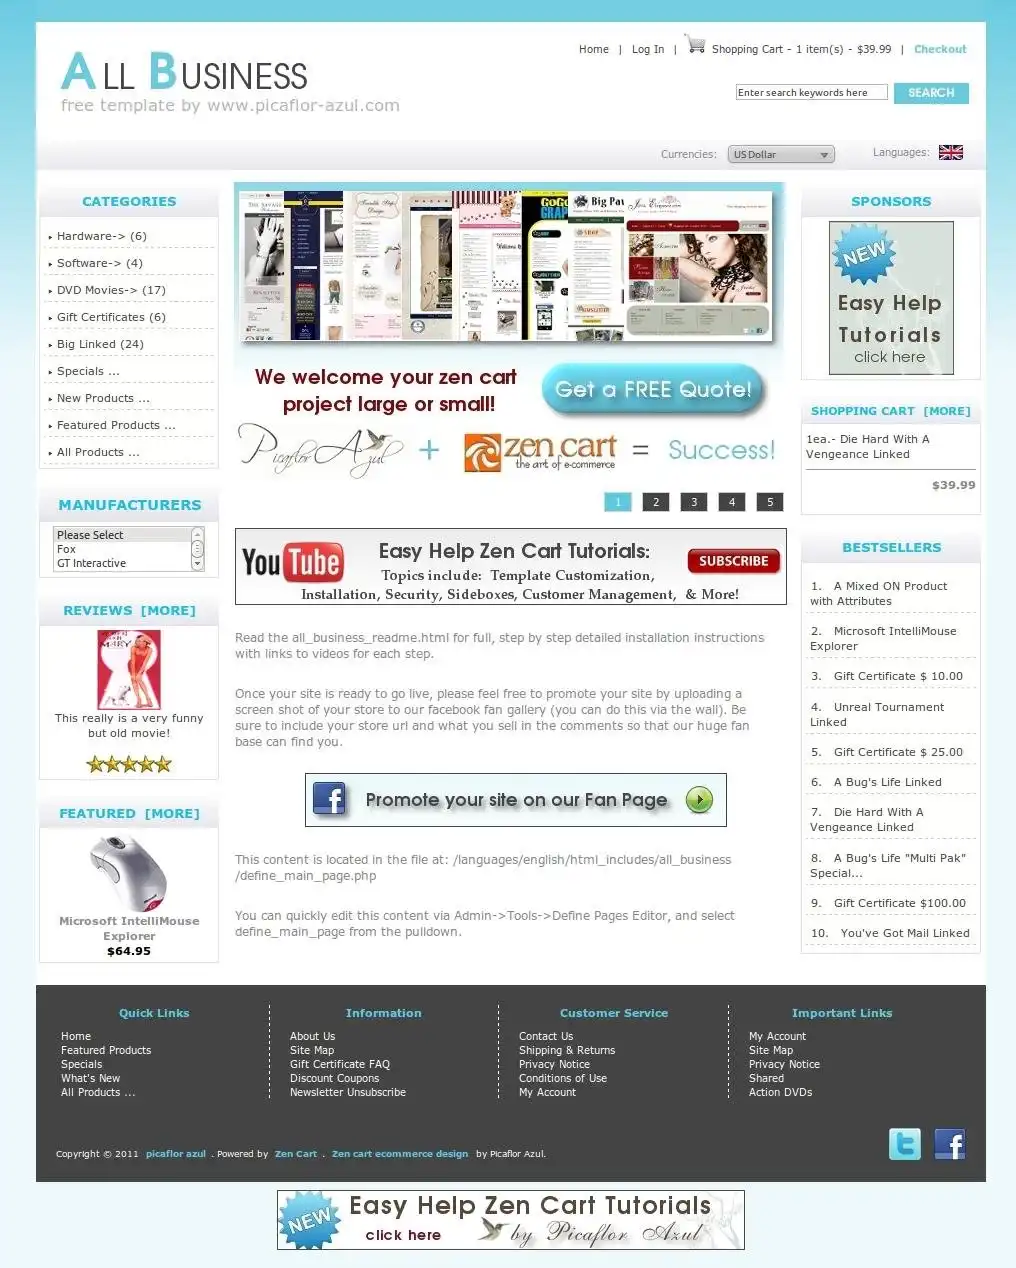 WebツールまたはWebアプリをダウンロードするすべてのビジネス無料Zenカートテンプレート